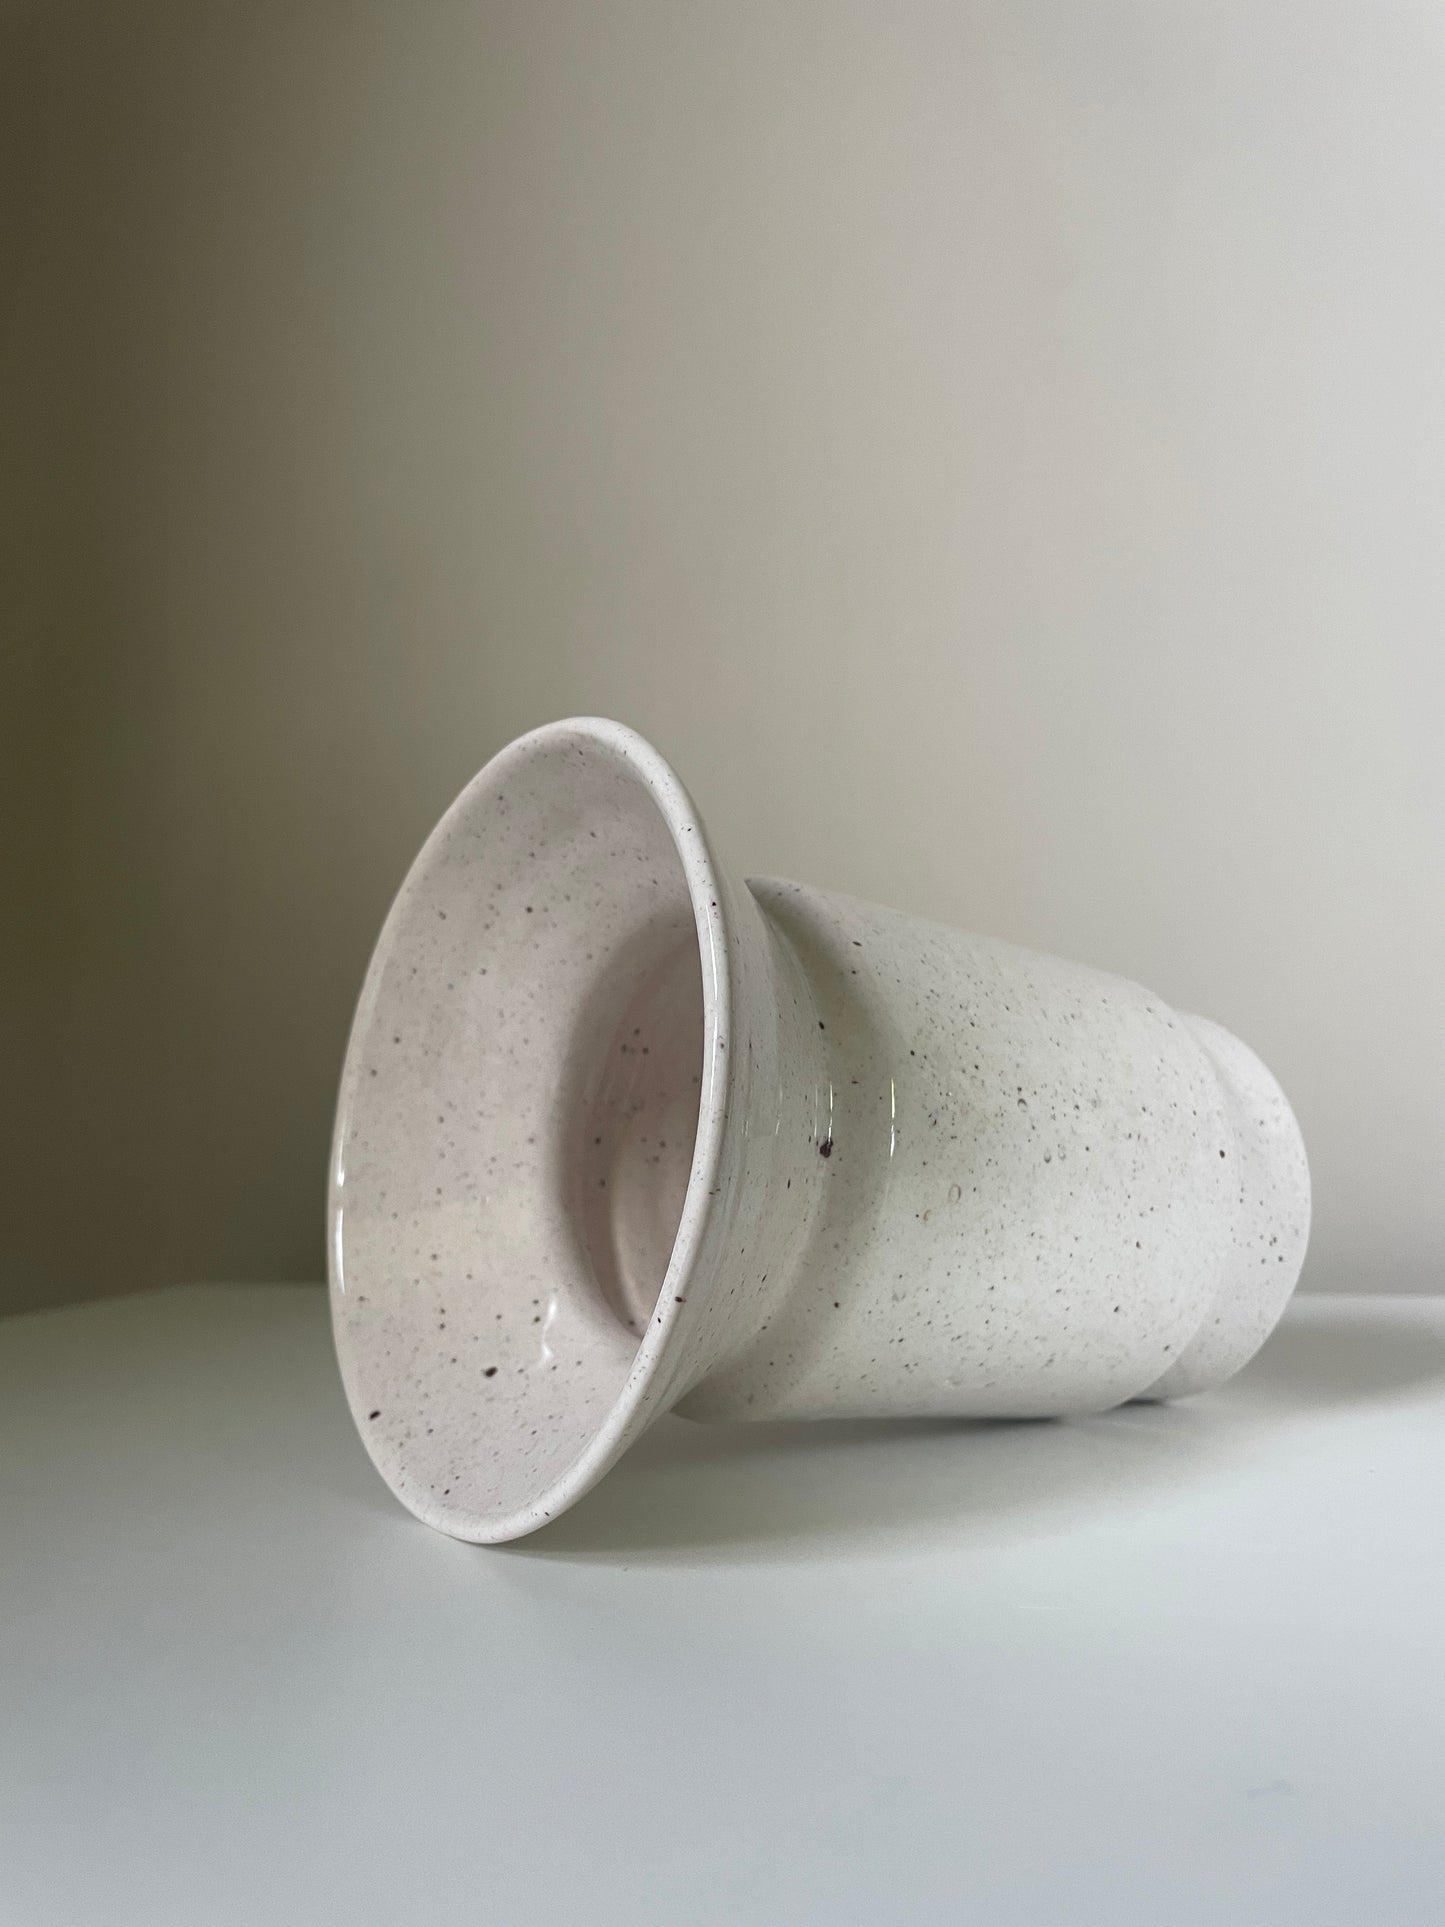 Contemporary vase #02